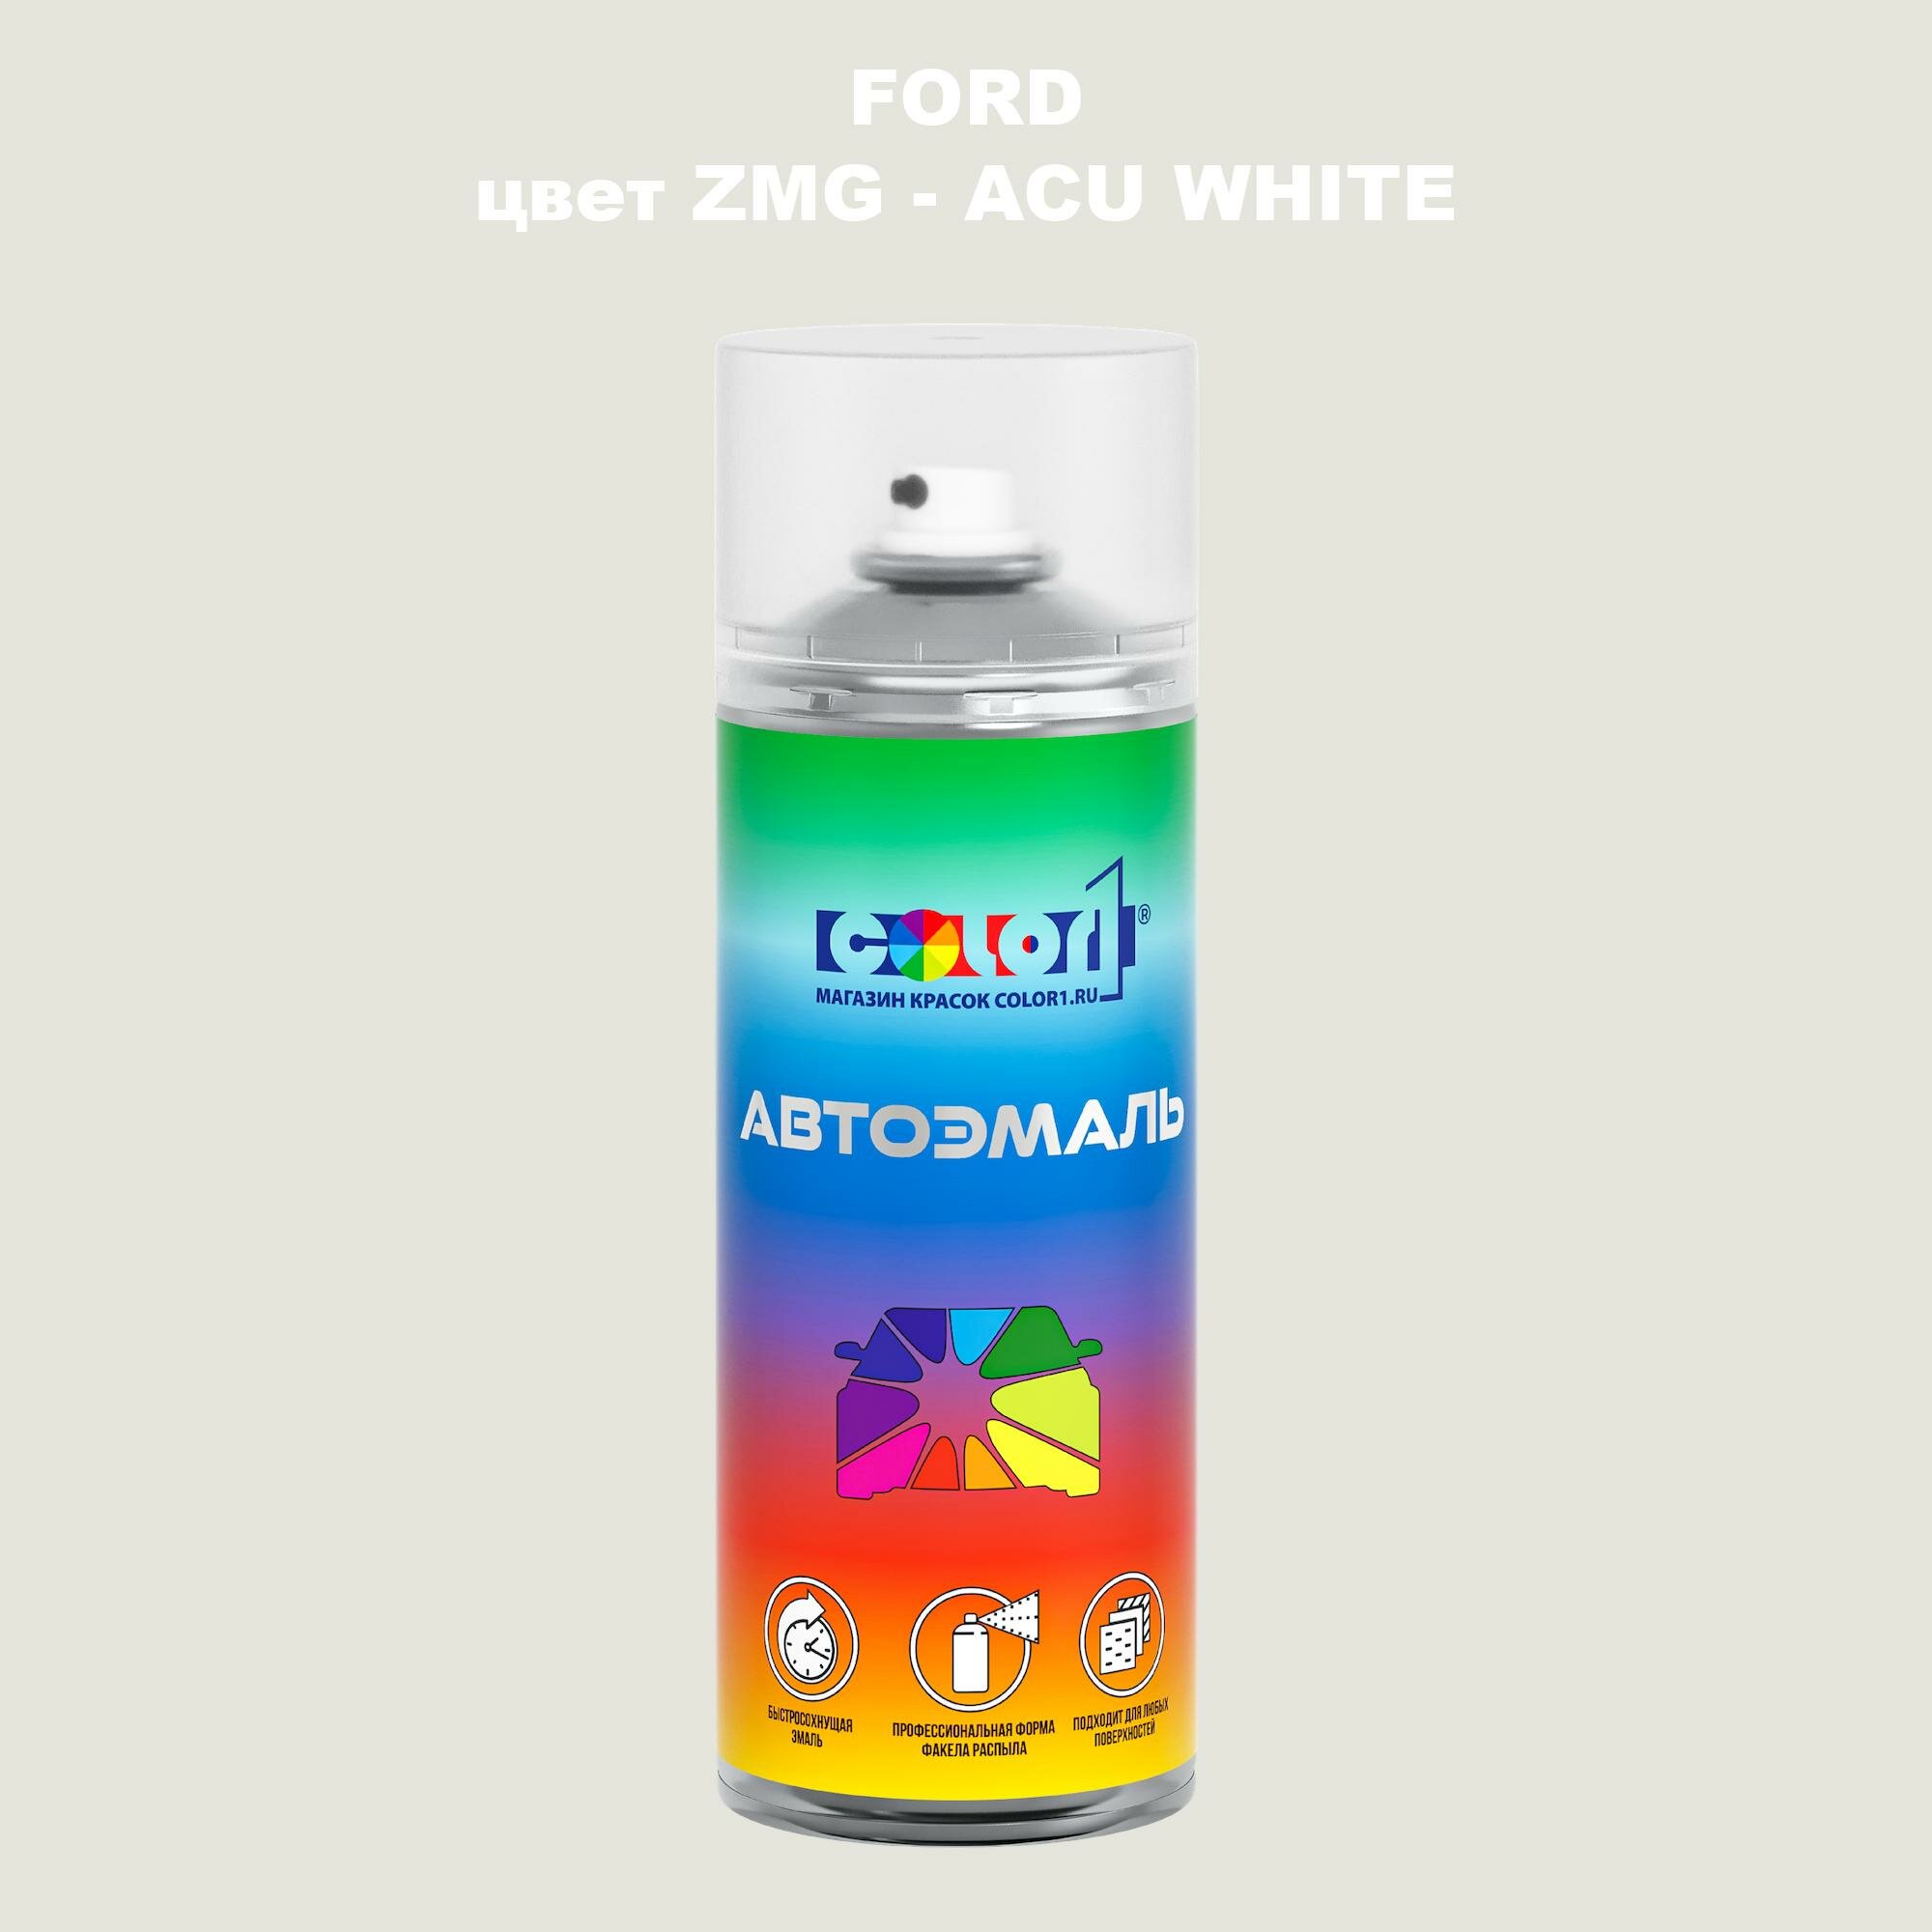 Аэрозольная краска COLOR1 для FORD, цвет ZMG - ACU WHITE